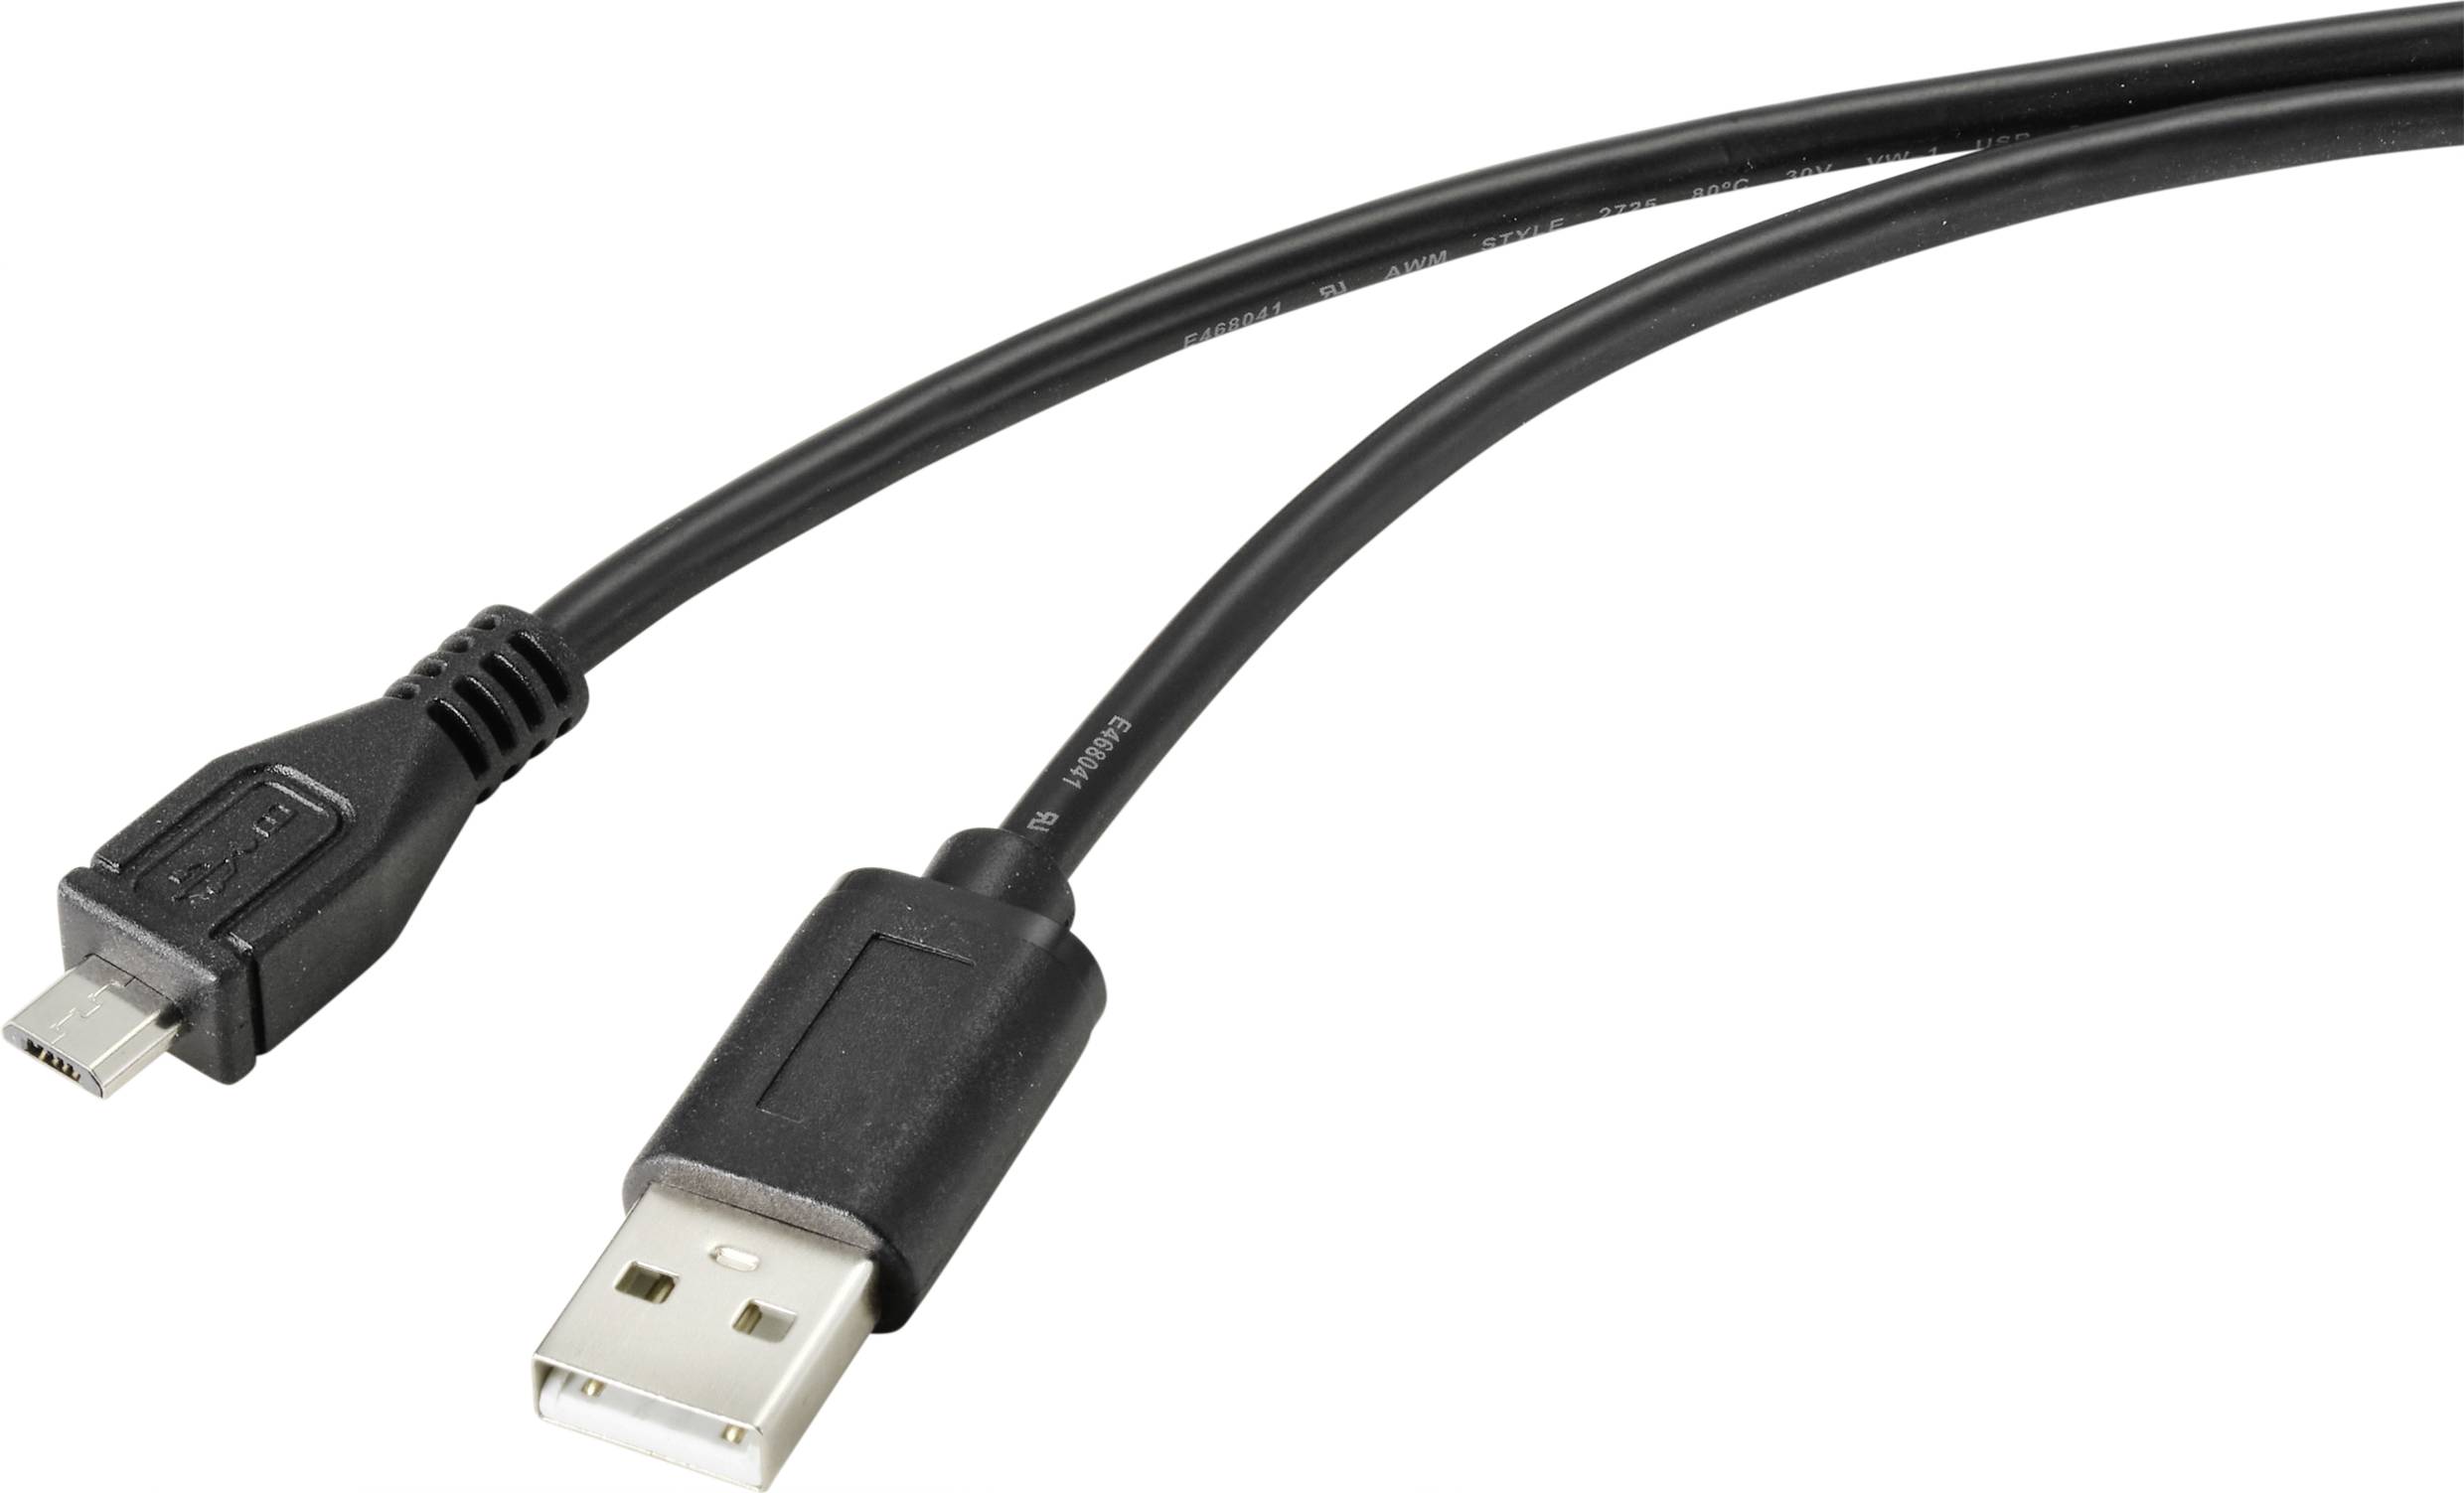 CONRAD Renkforce USB-Kabel USB 2.0 USB-A Stecker, USB-Micro-B Stecker 2.00 m Schwarz mit antimikrobi